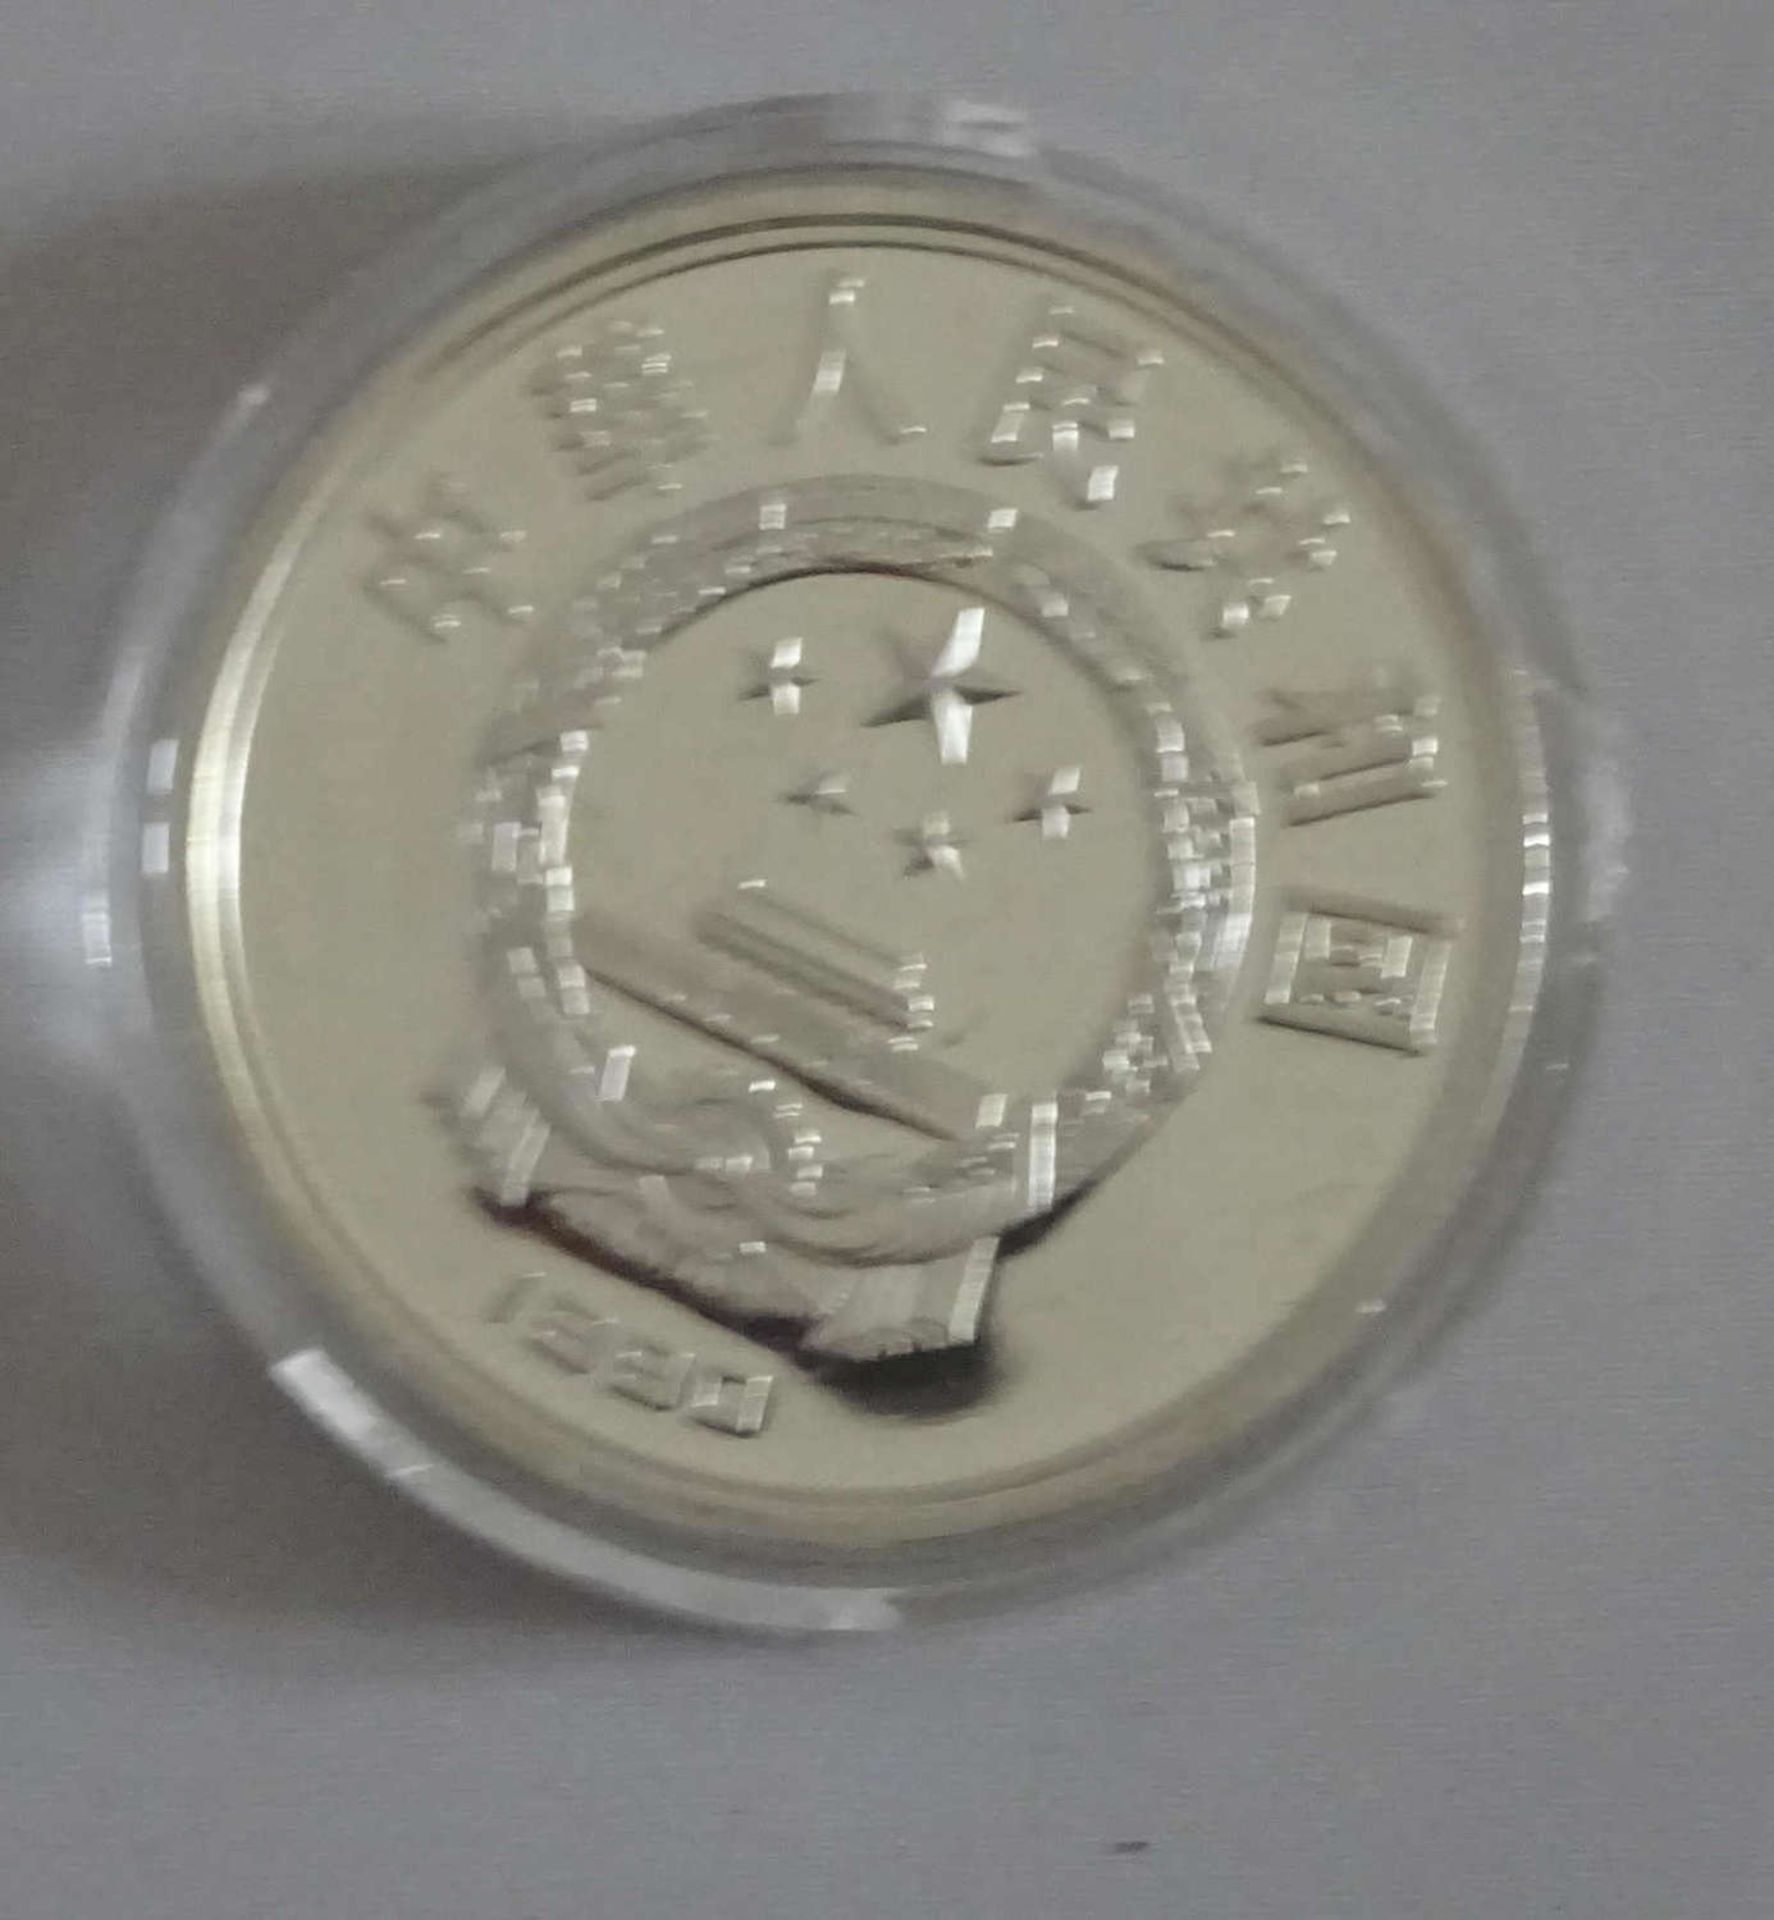 China 1990, 10 Yuan - Silbermünze "Olympische Spiele 1992 - Turmspringerin". In Kapsel. Erhaltung: - Bild 2 aus 2